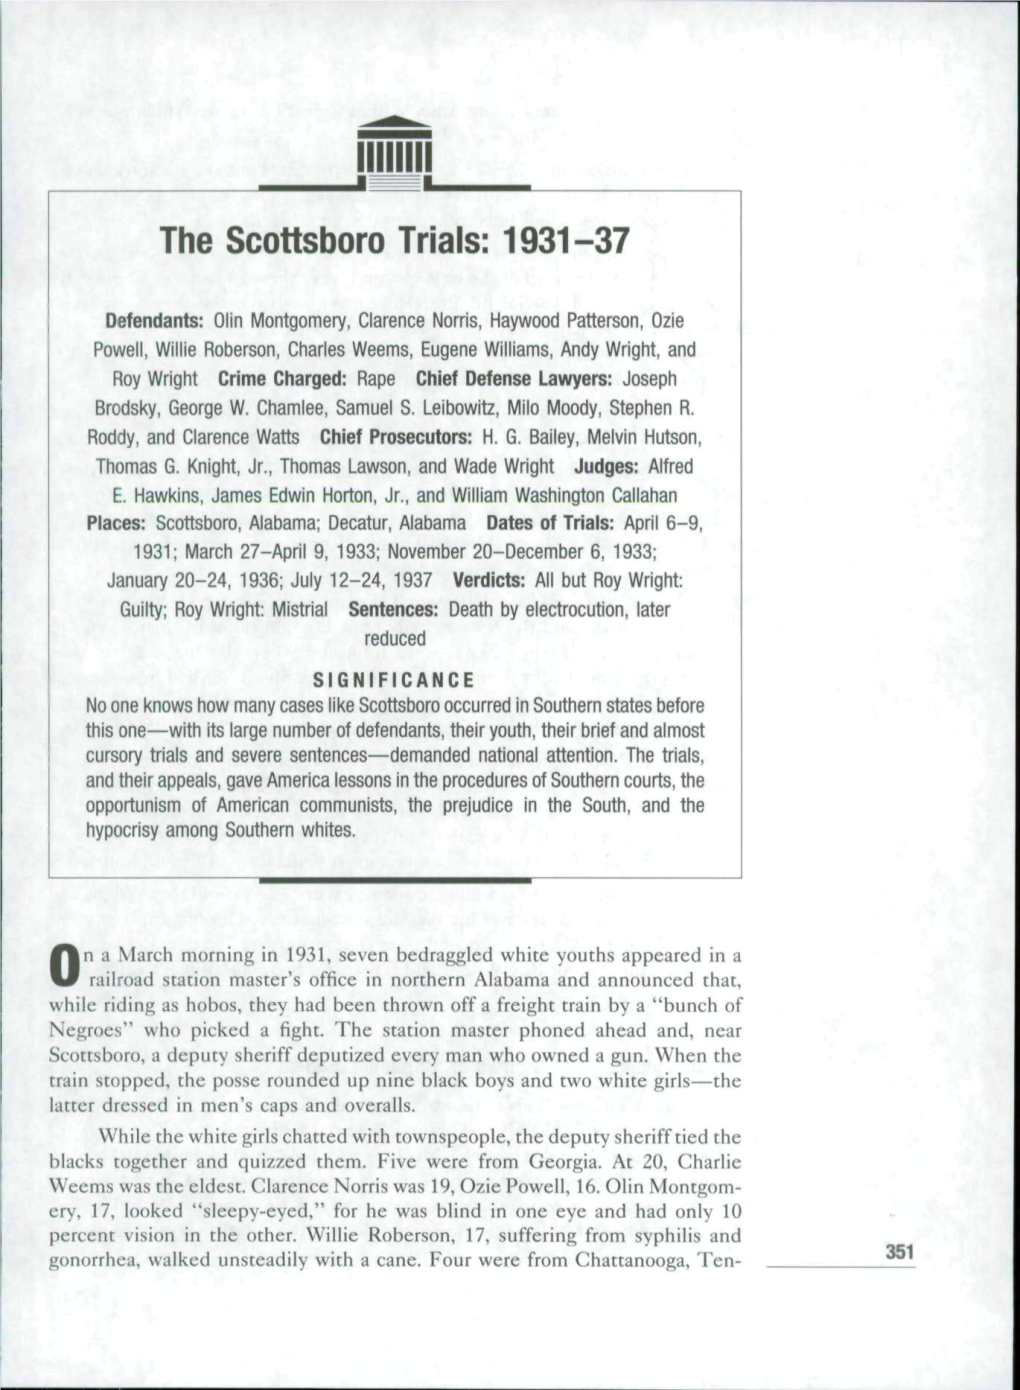 The Scottsboro Trials: 1931-37